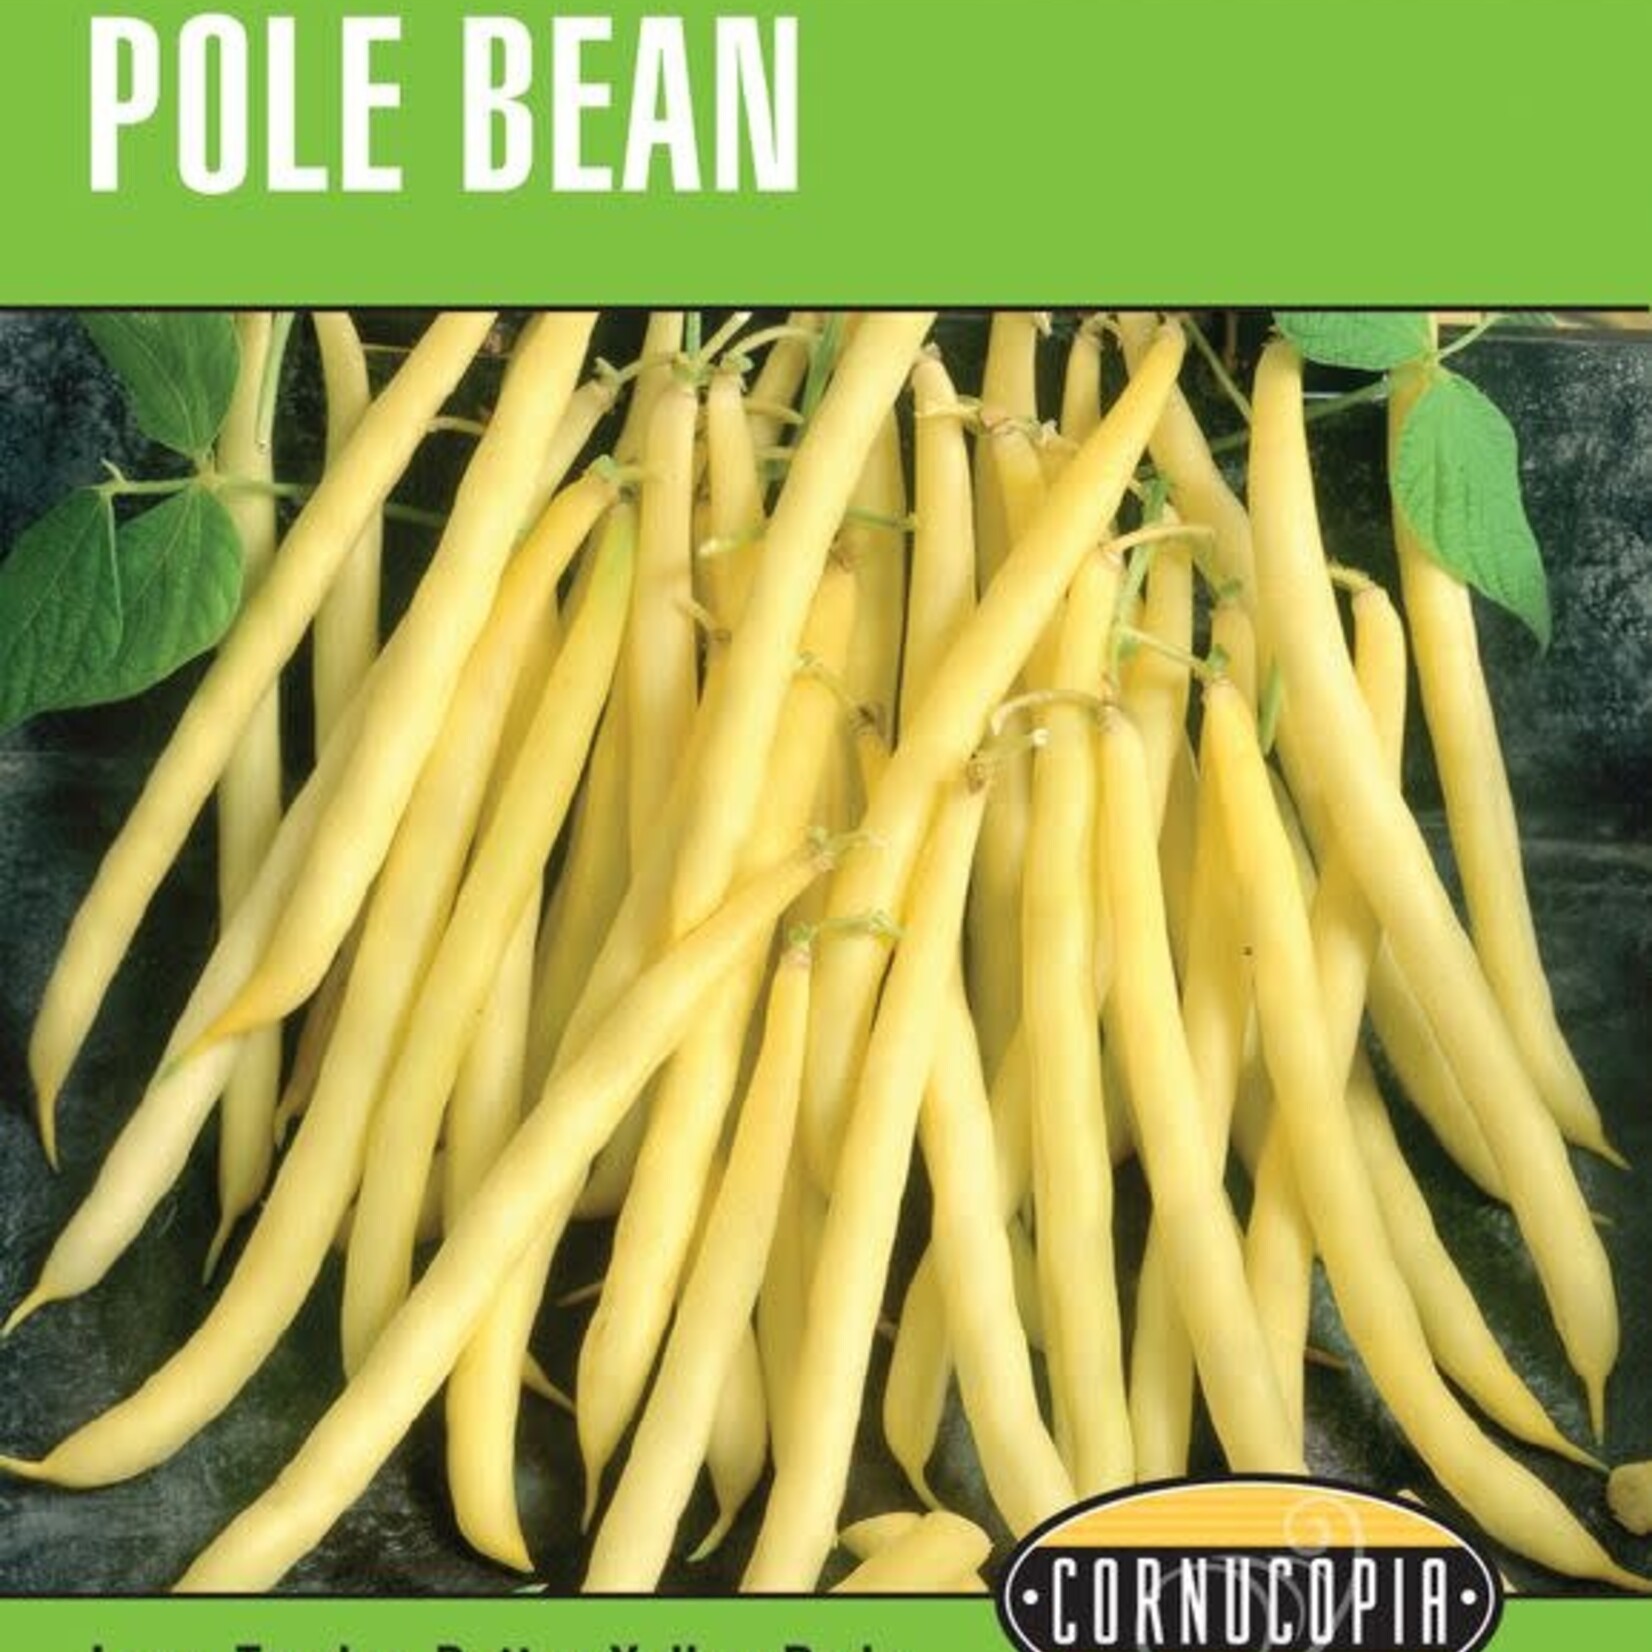 Cornucopia Bean Pole Golden Wax Seeds